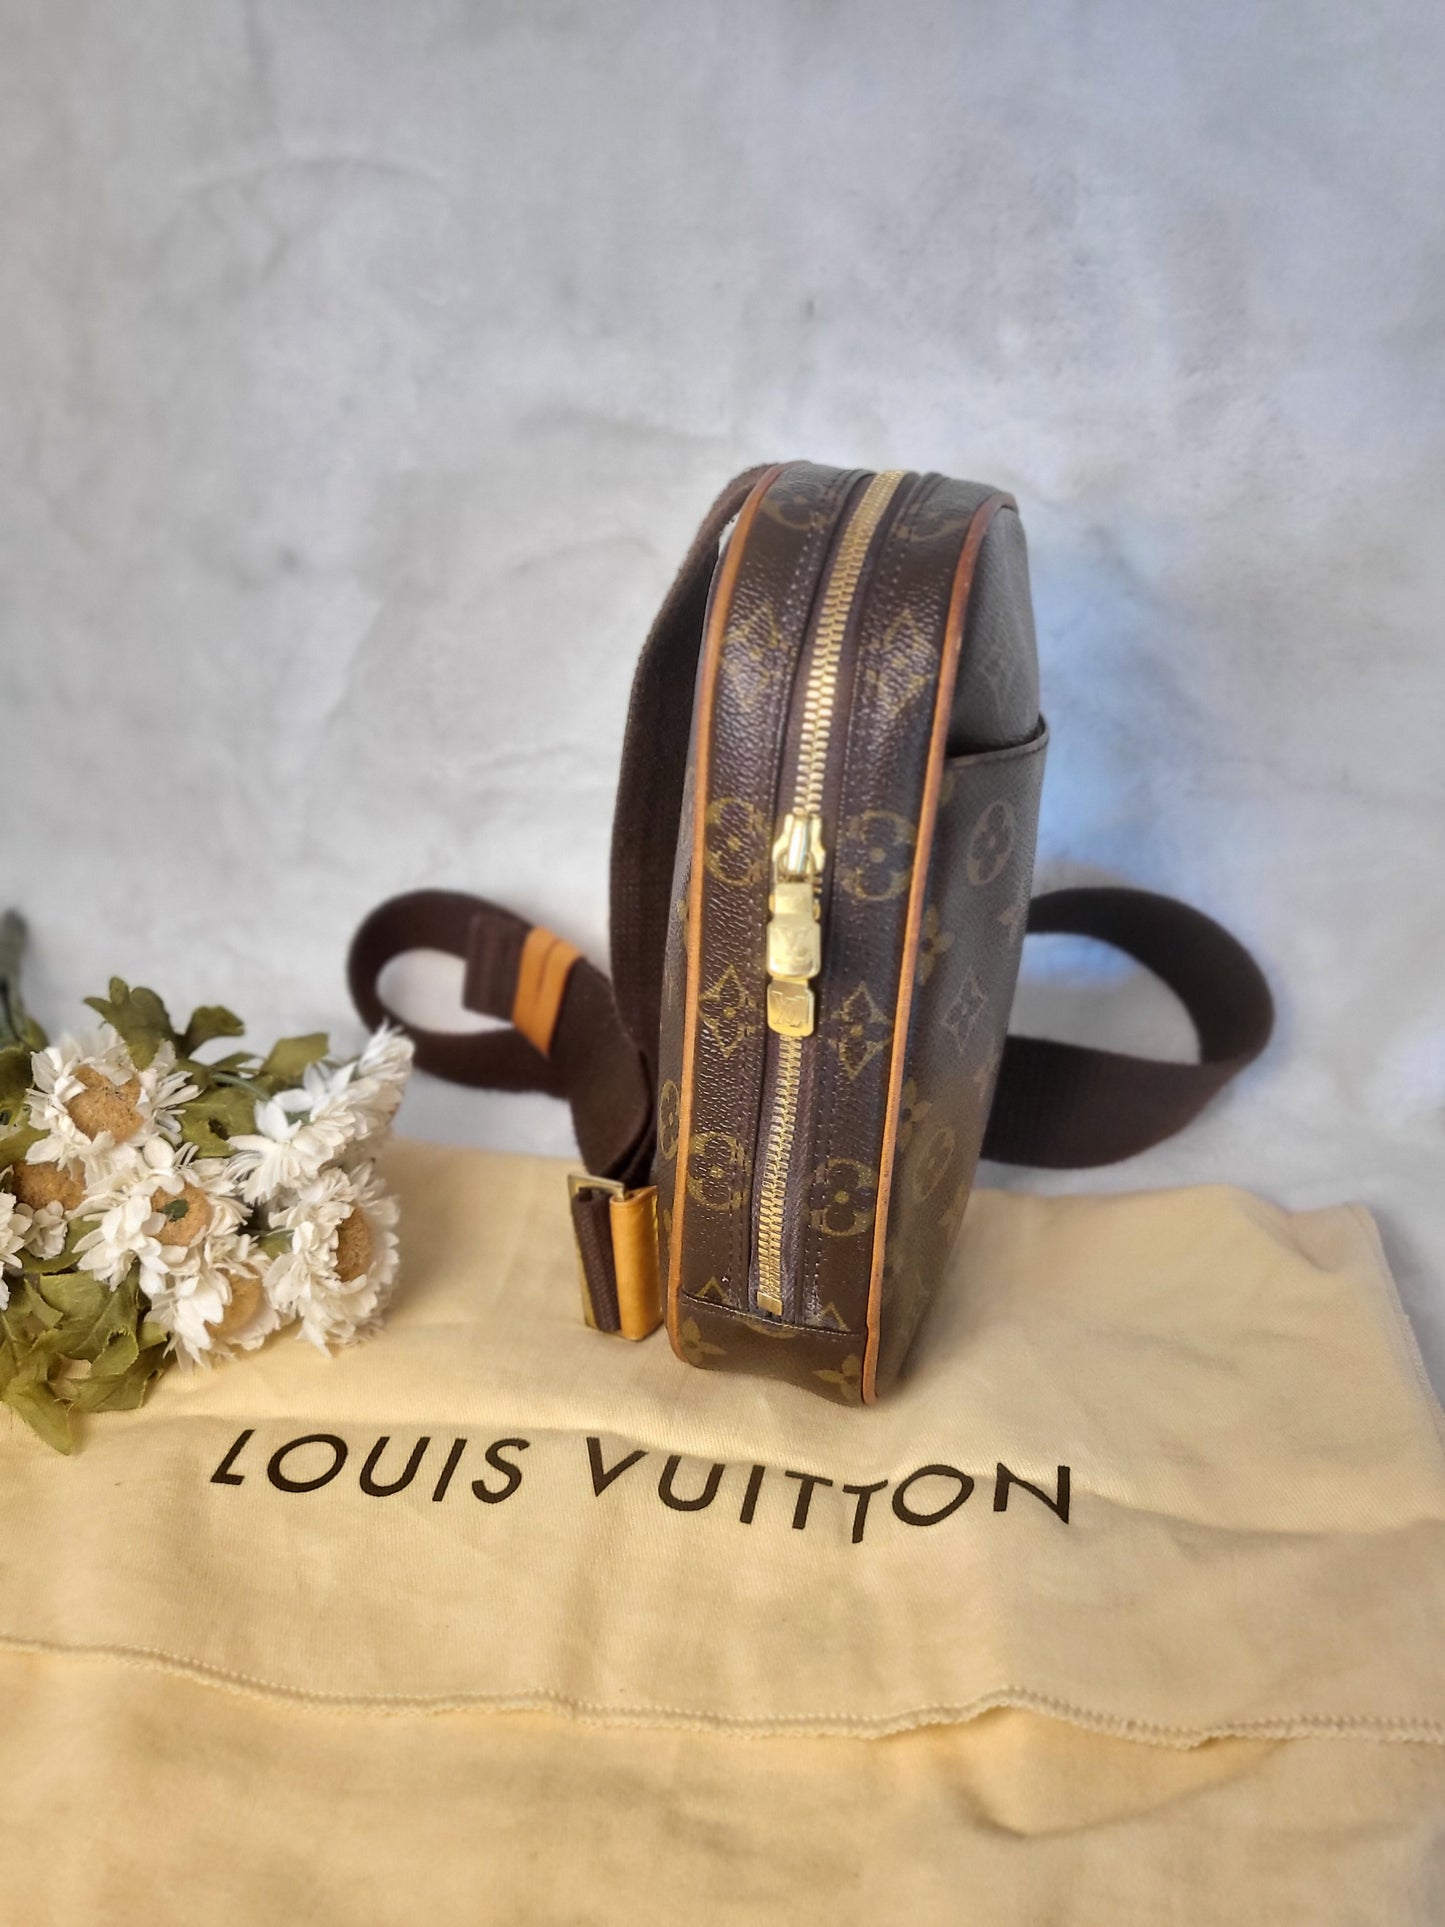 Authentic pre-owned Louis Vuitton Pochette Gange bum bag waist bag